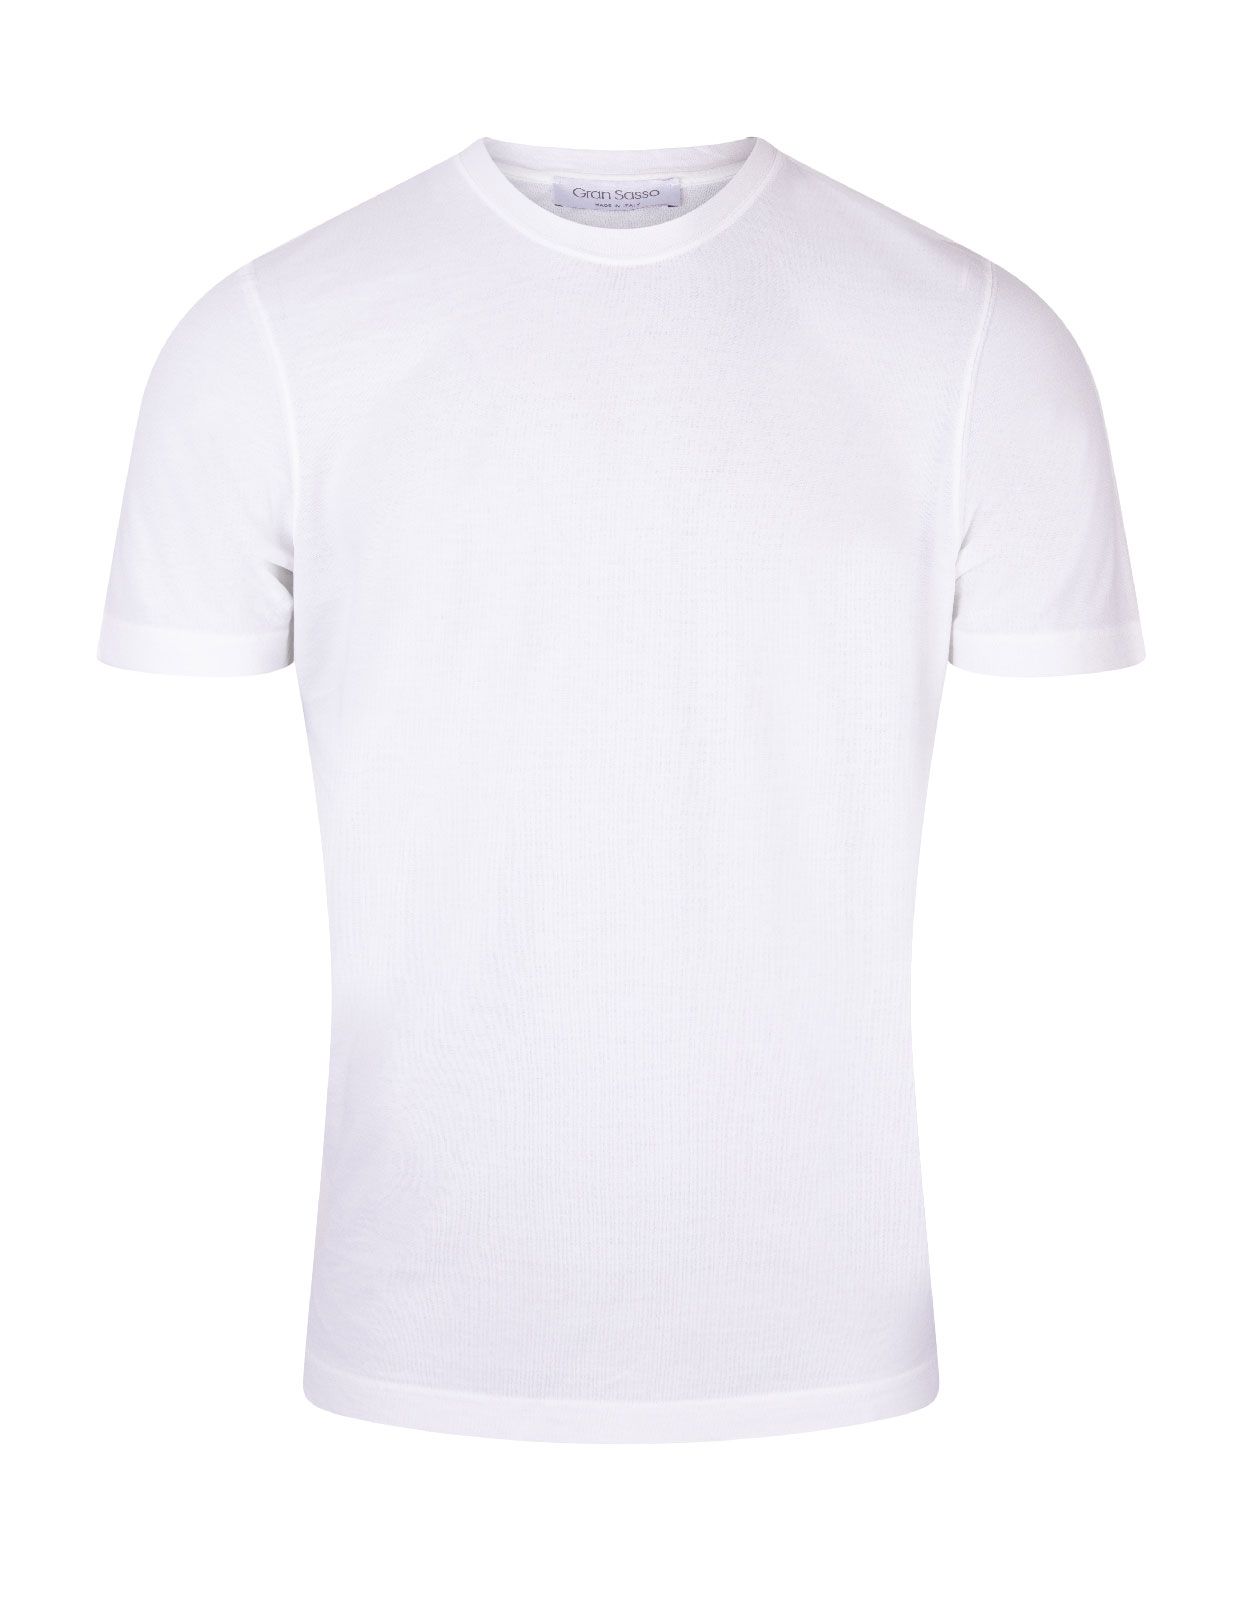 T-shirt Cotton Crew Neck White Stl 48